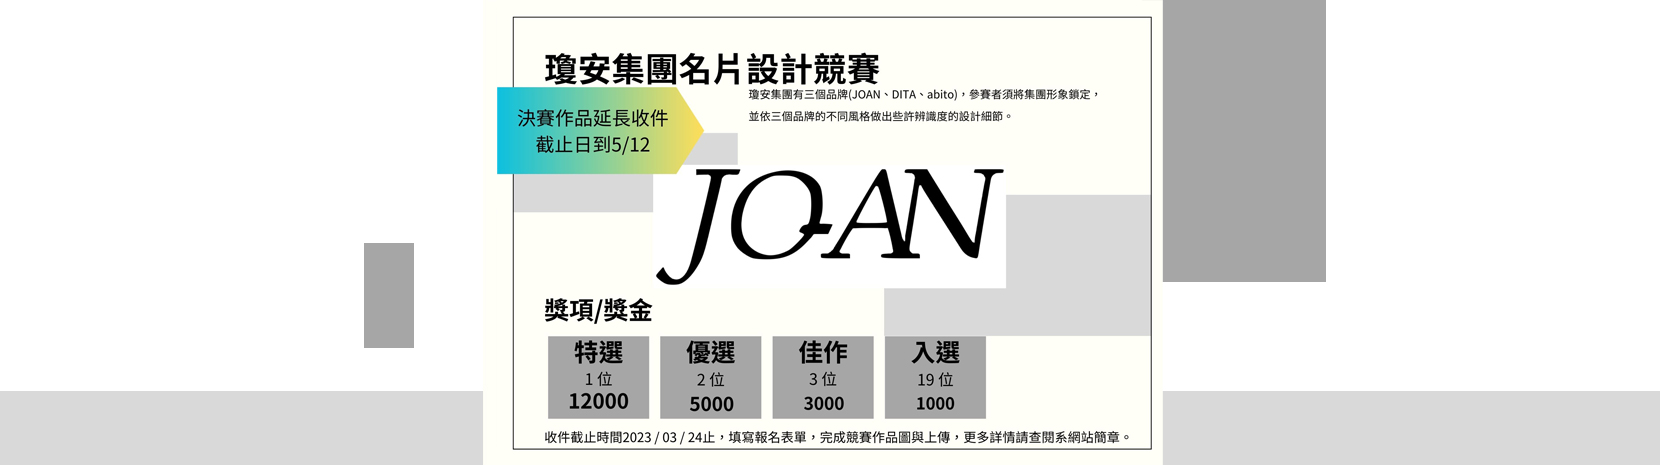 瓊安集團名片設計競賽-決賽成品收件截止延長至5/12